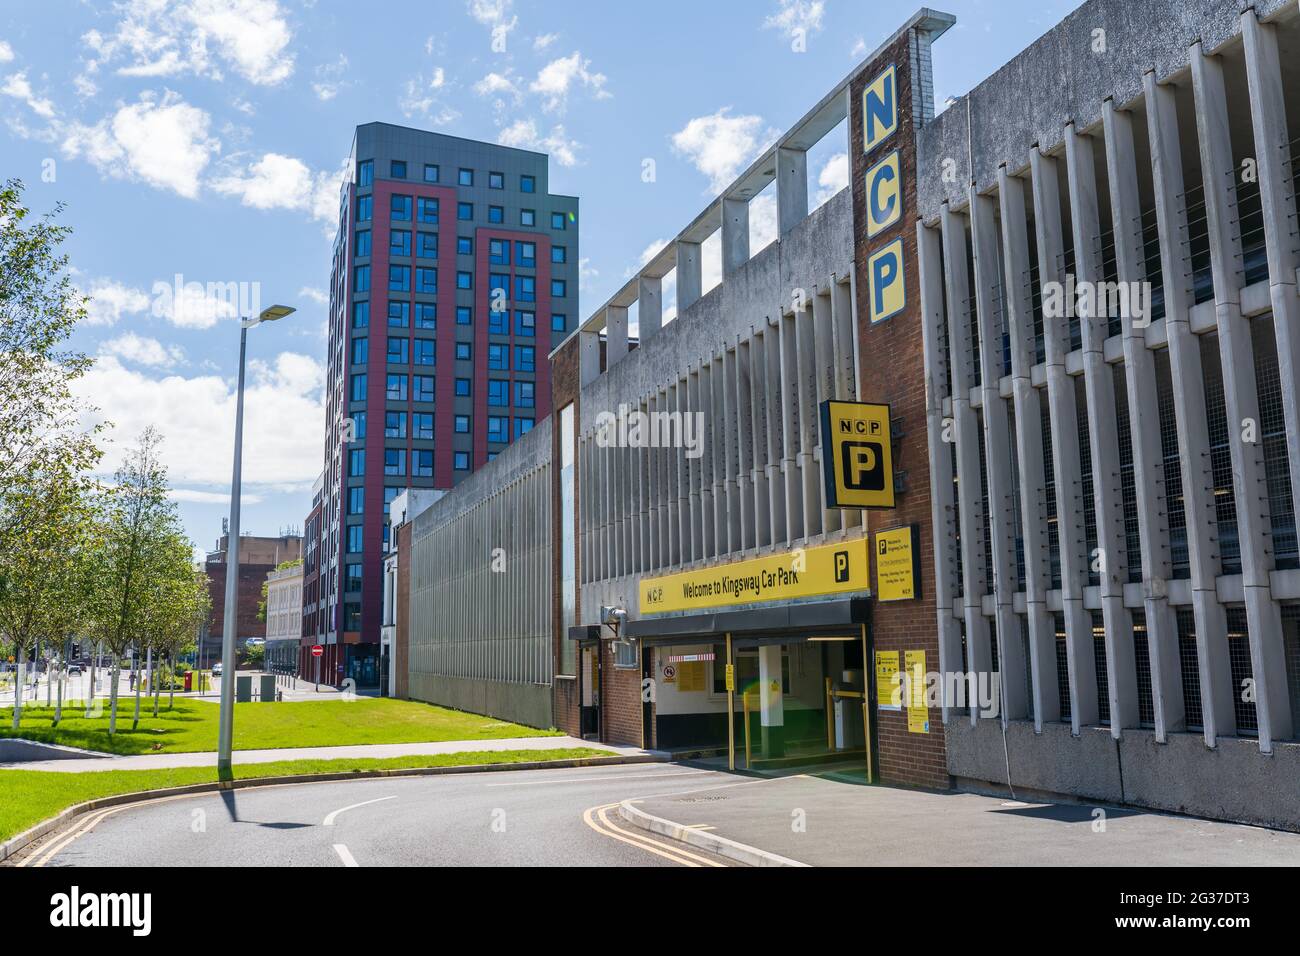 SWANSEA, Royaume-Uni - 6 JUIN 2021 : le NCP ou le parc automobile national, The Kingsway, Swansea. Logo au-dessus de l'entrée. Parking de plusieurs étages dans le centre-ville. Banque D'Images